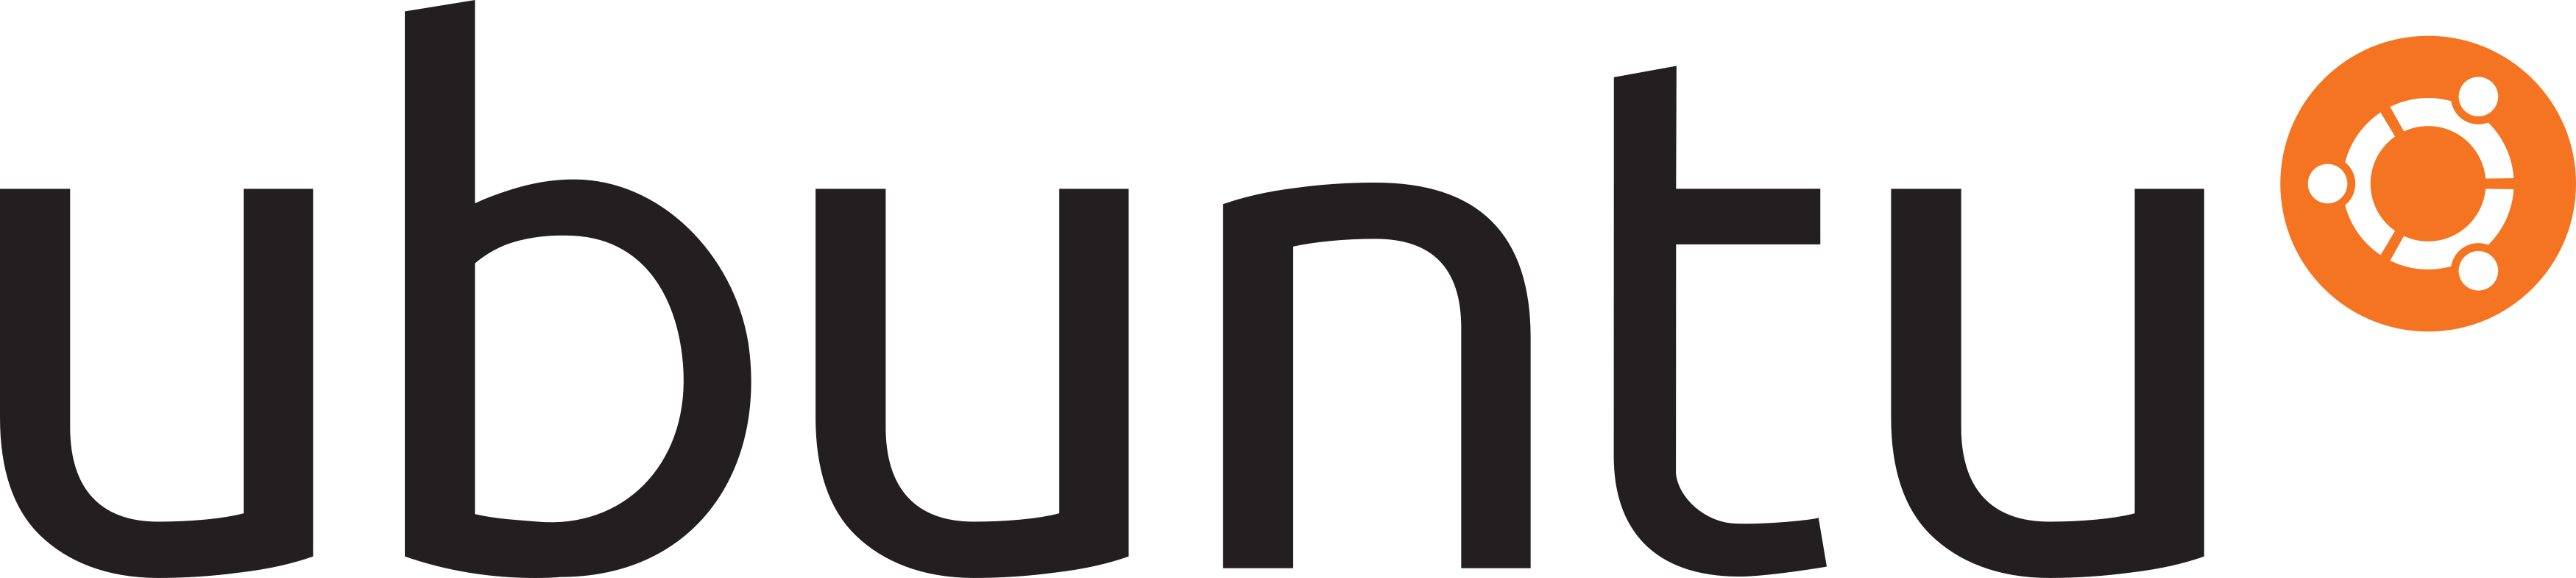 Ubuntu Logo.